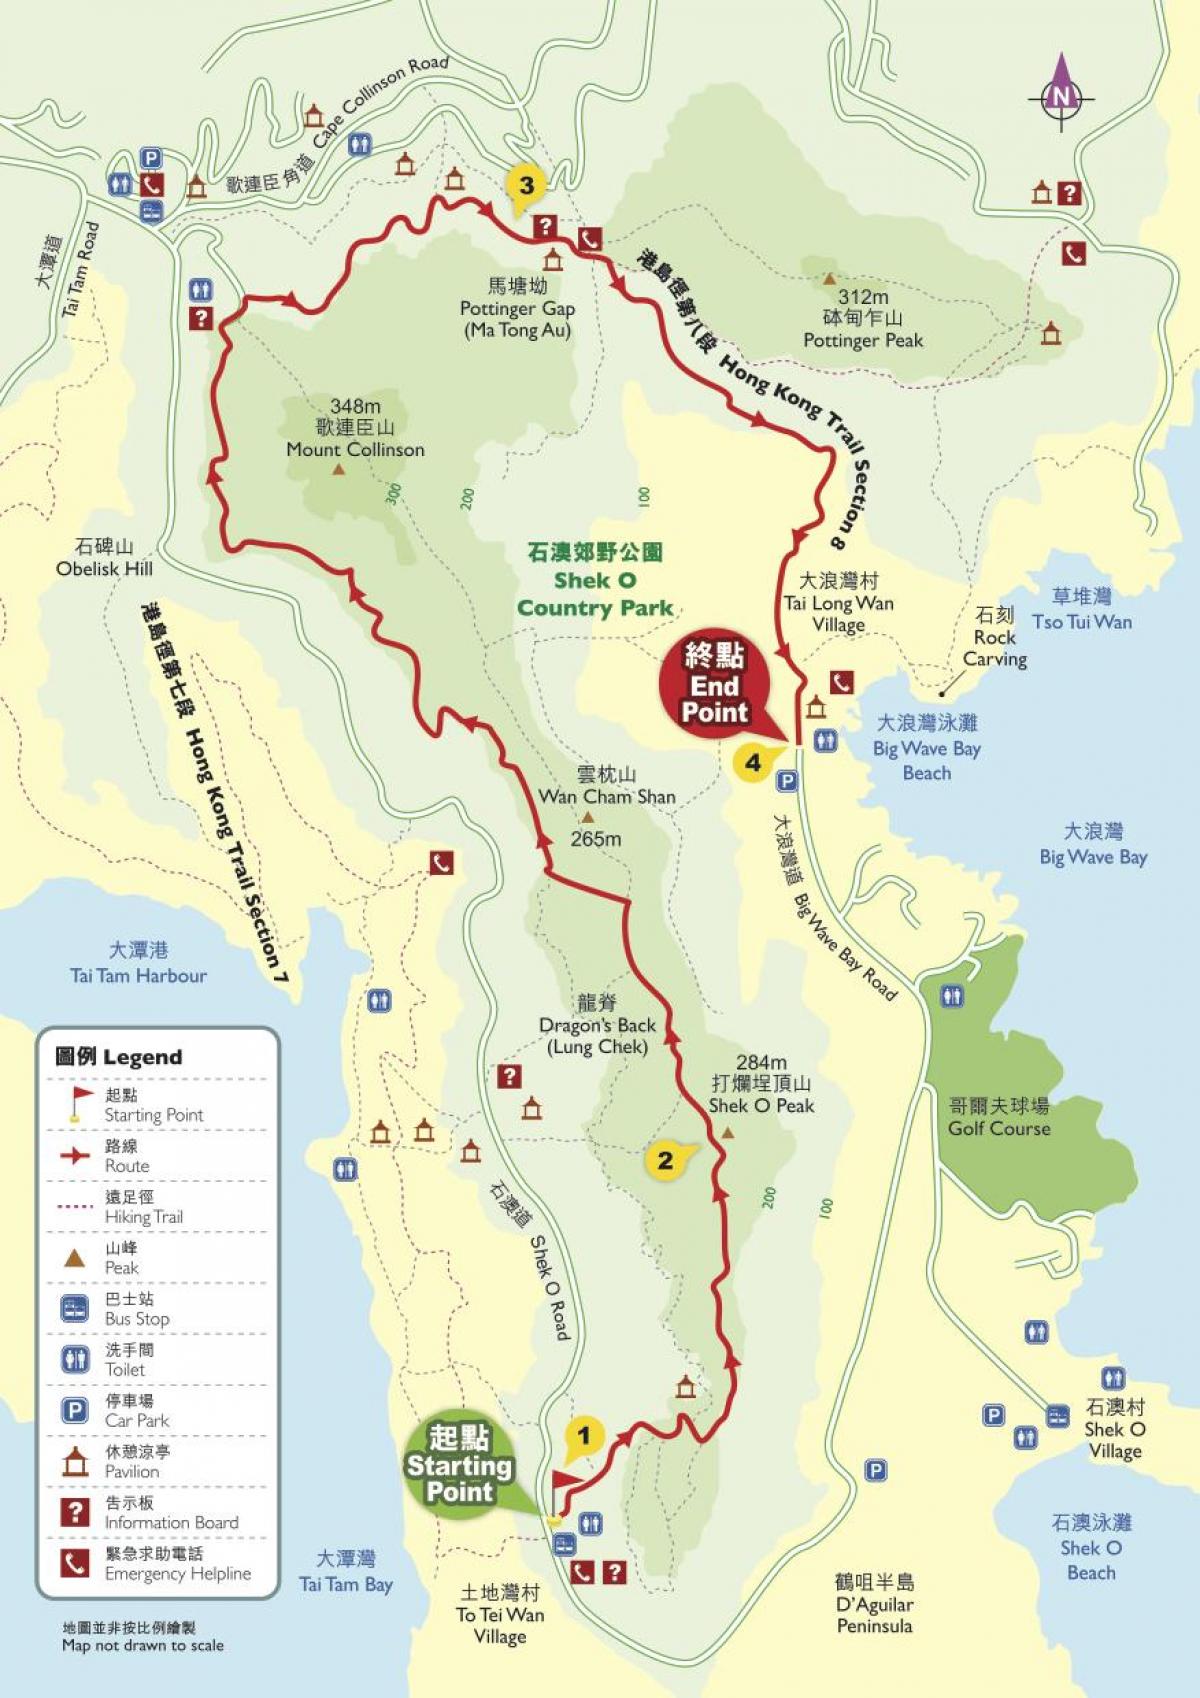 پیدل سفر کا نقشہ ہانگ کانگ